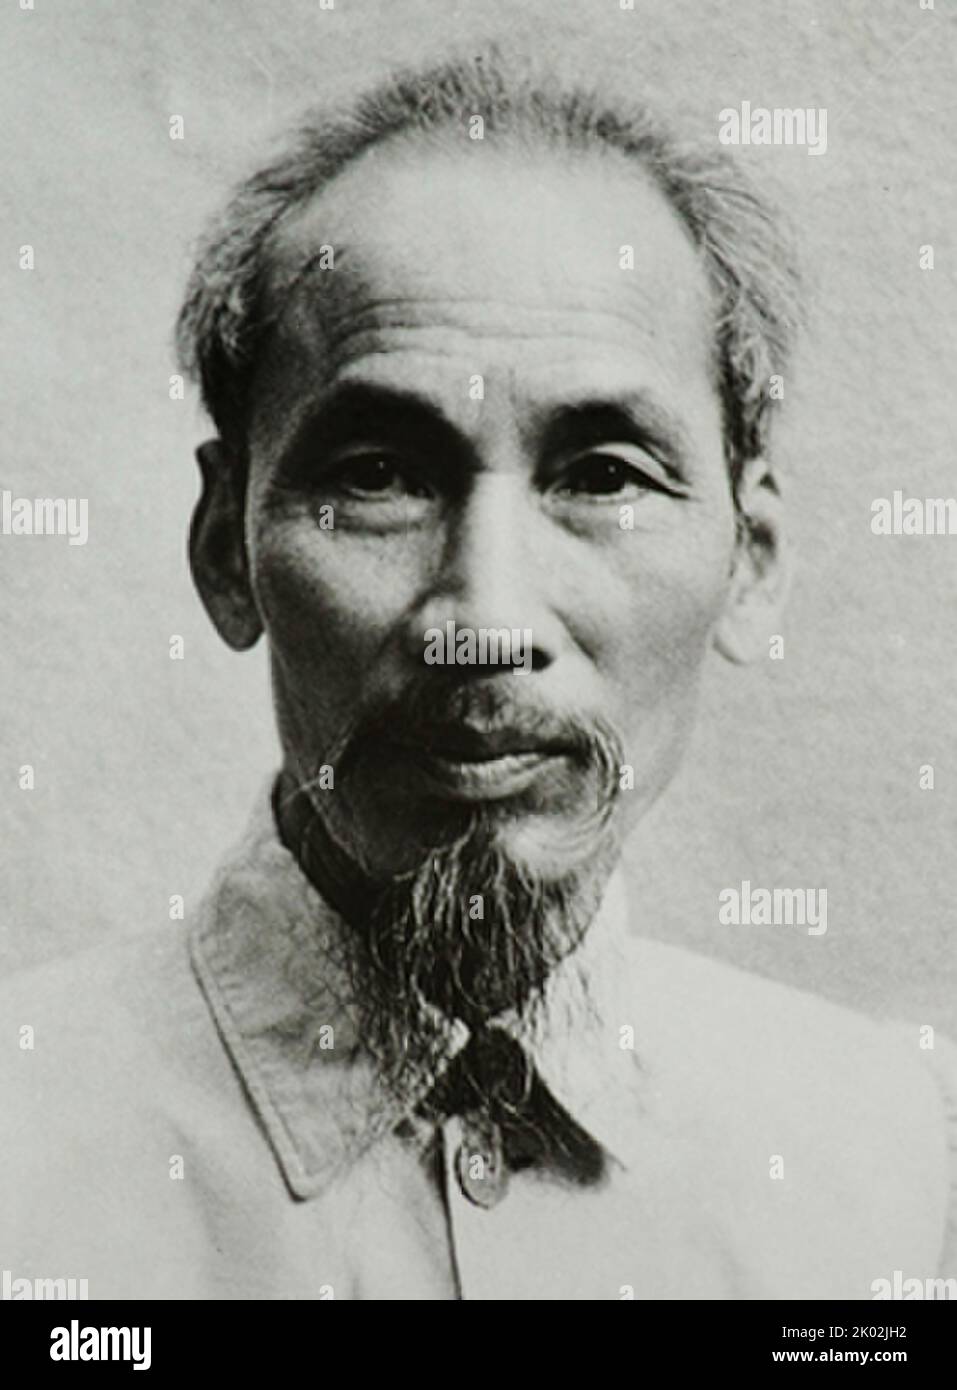 Ho Chi Minh (1890 - 1969), vietnamesischer Revolutionär und Politiker. Von 1945 bis 1955 war er Premierminister von Vietnam und von 1945 bis 1969 Präsident. Stockfoto